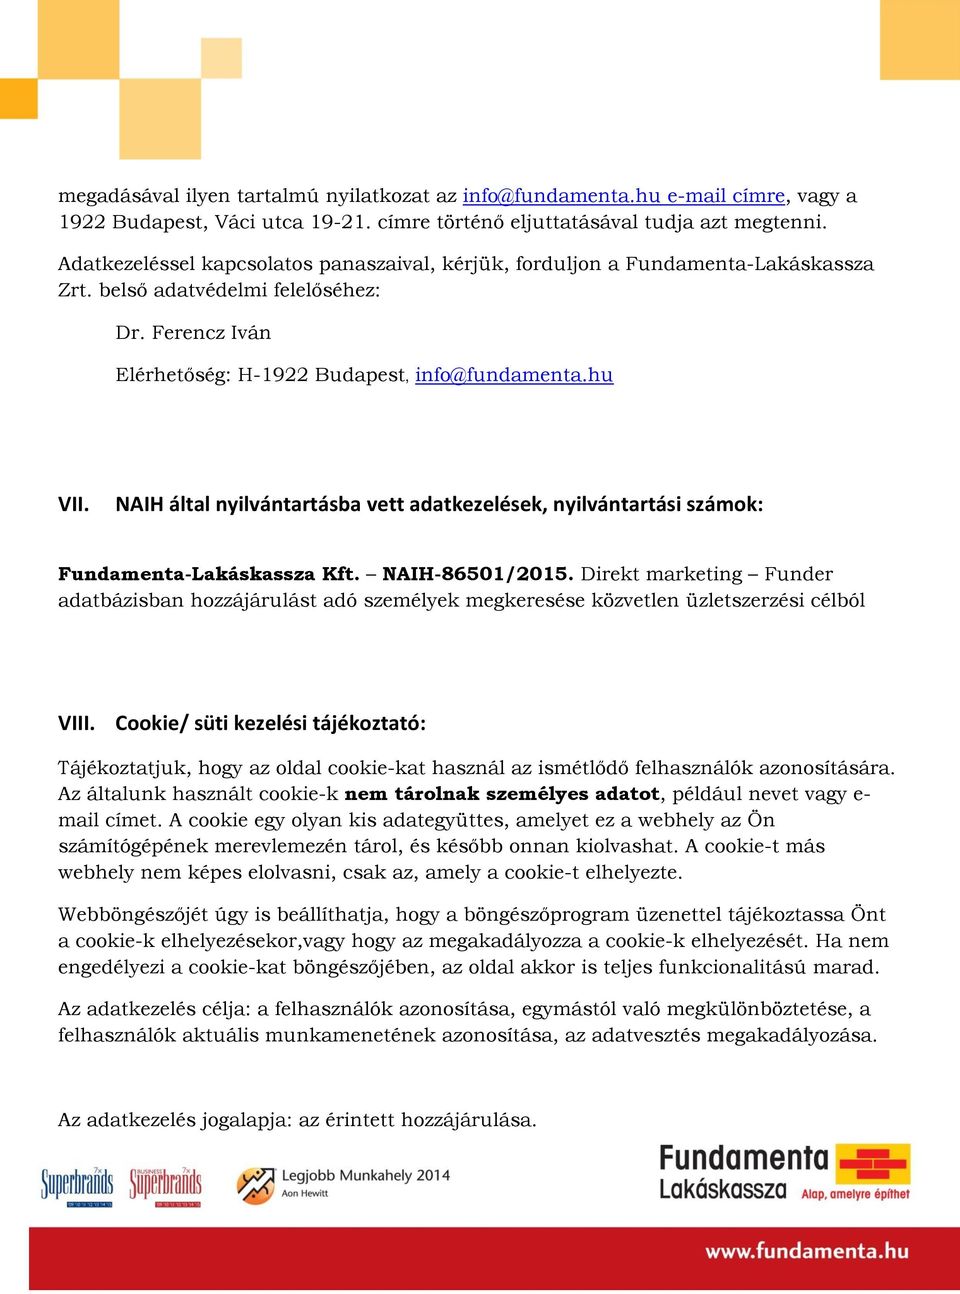 NAIH által nyilvántartásba vett adatkezelések, nyilvántartási számok: Fundamenta-Lakáskassza Kft. NAIH-86501/2015.